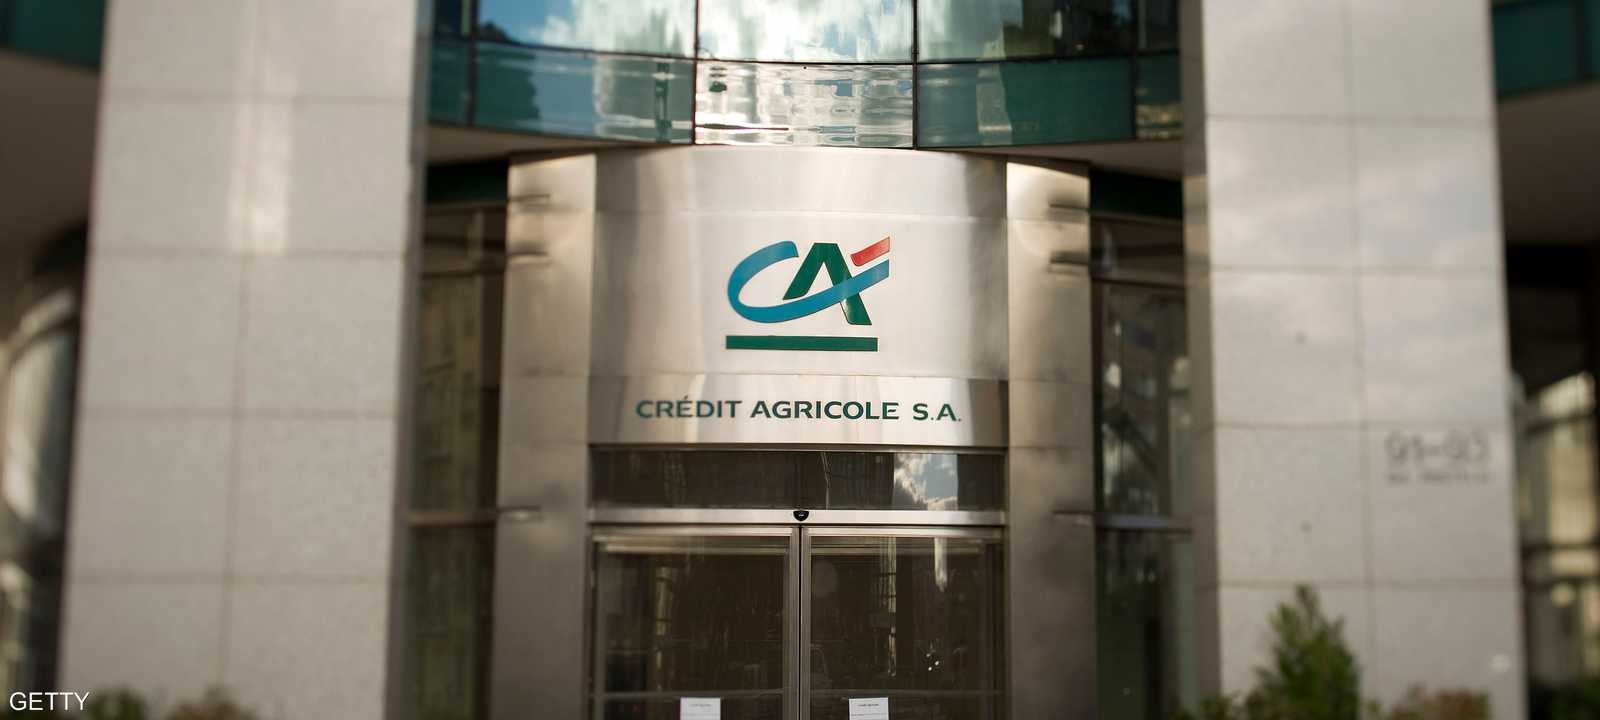 بنك كريدي أغريكول الفرنسي كان أحد البنوك التي خفضت موديز تصنيفها